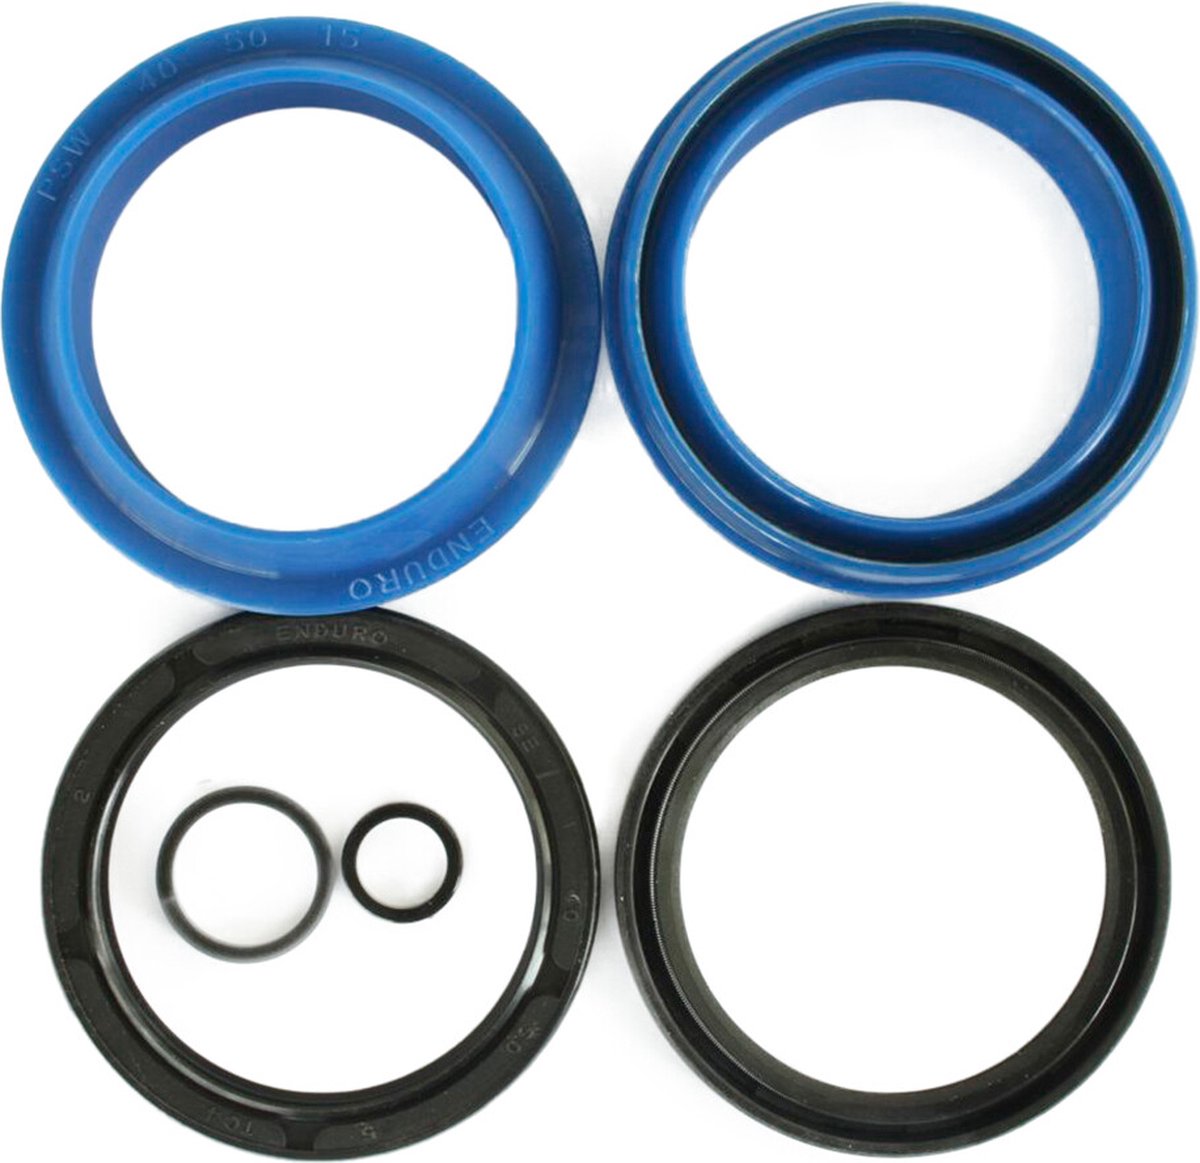 Enduro Bearings FK-6653 Afdichtingsset voor Fox 40mm, blauw/zwart